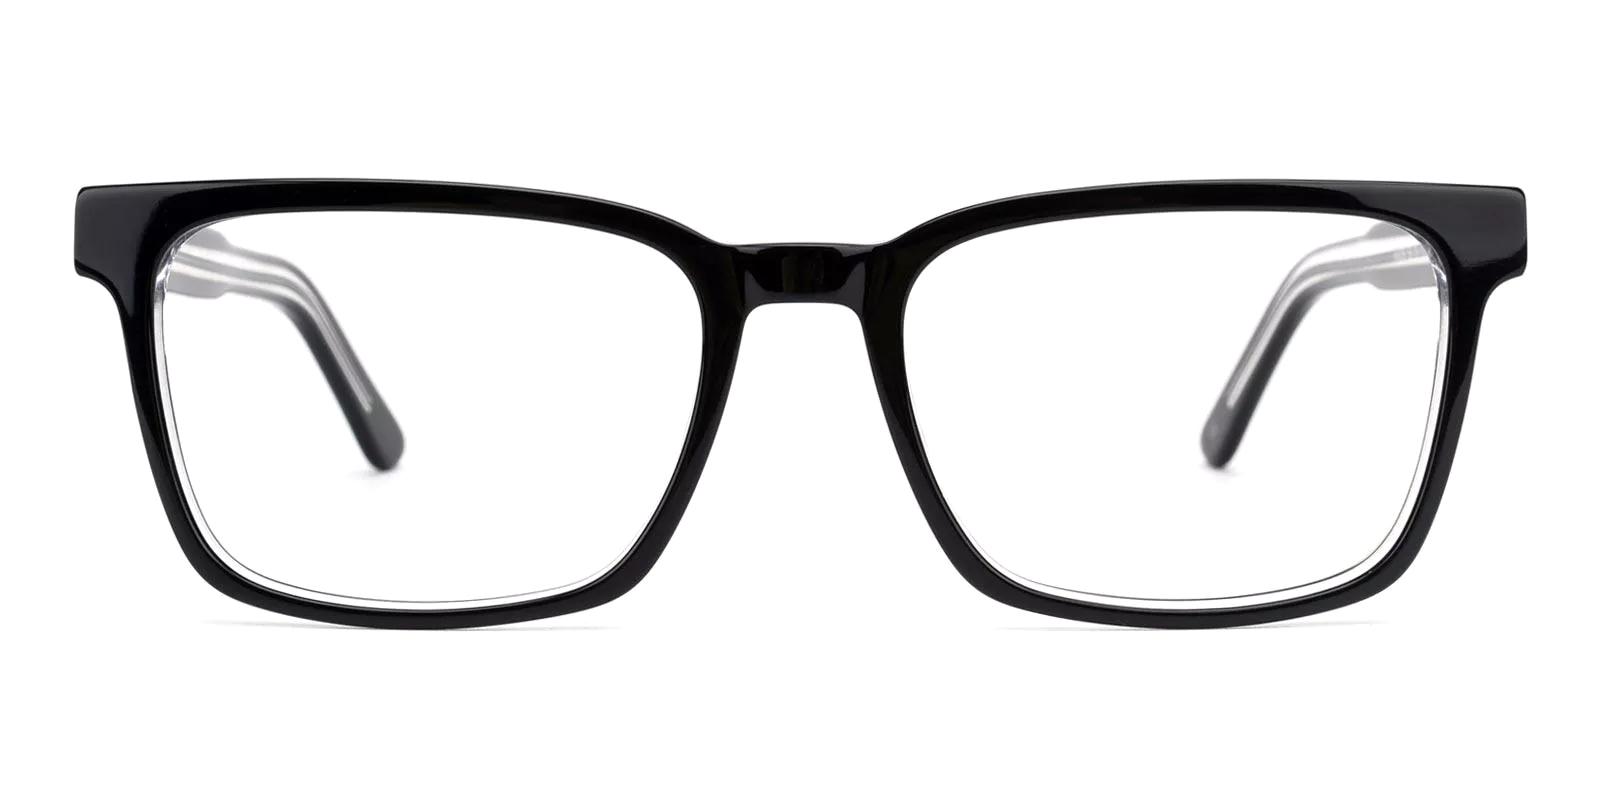 Merg Black Acetate Eyeglasses , SpringHinges , UniversalBridgeFit Frames from ABBE Glasses